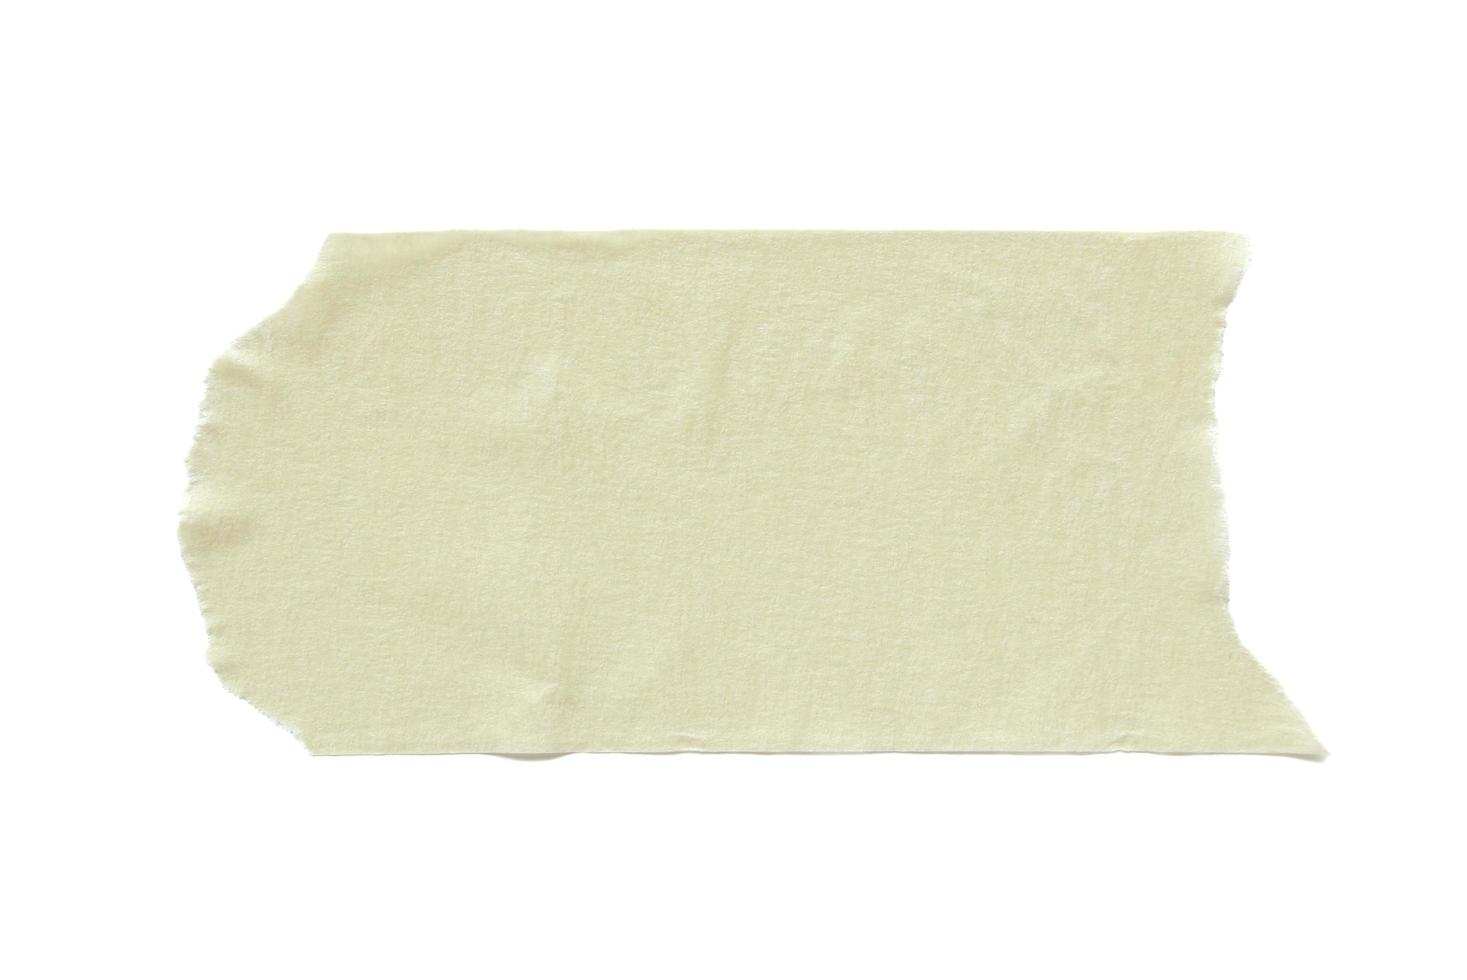 fita adesiva rasgada isolada no branco foto